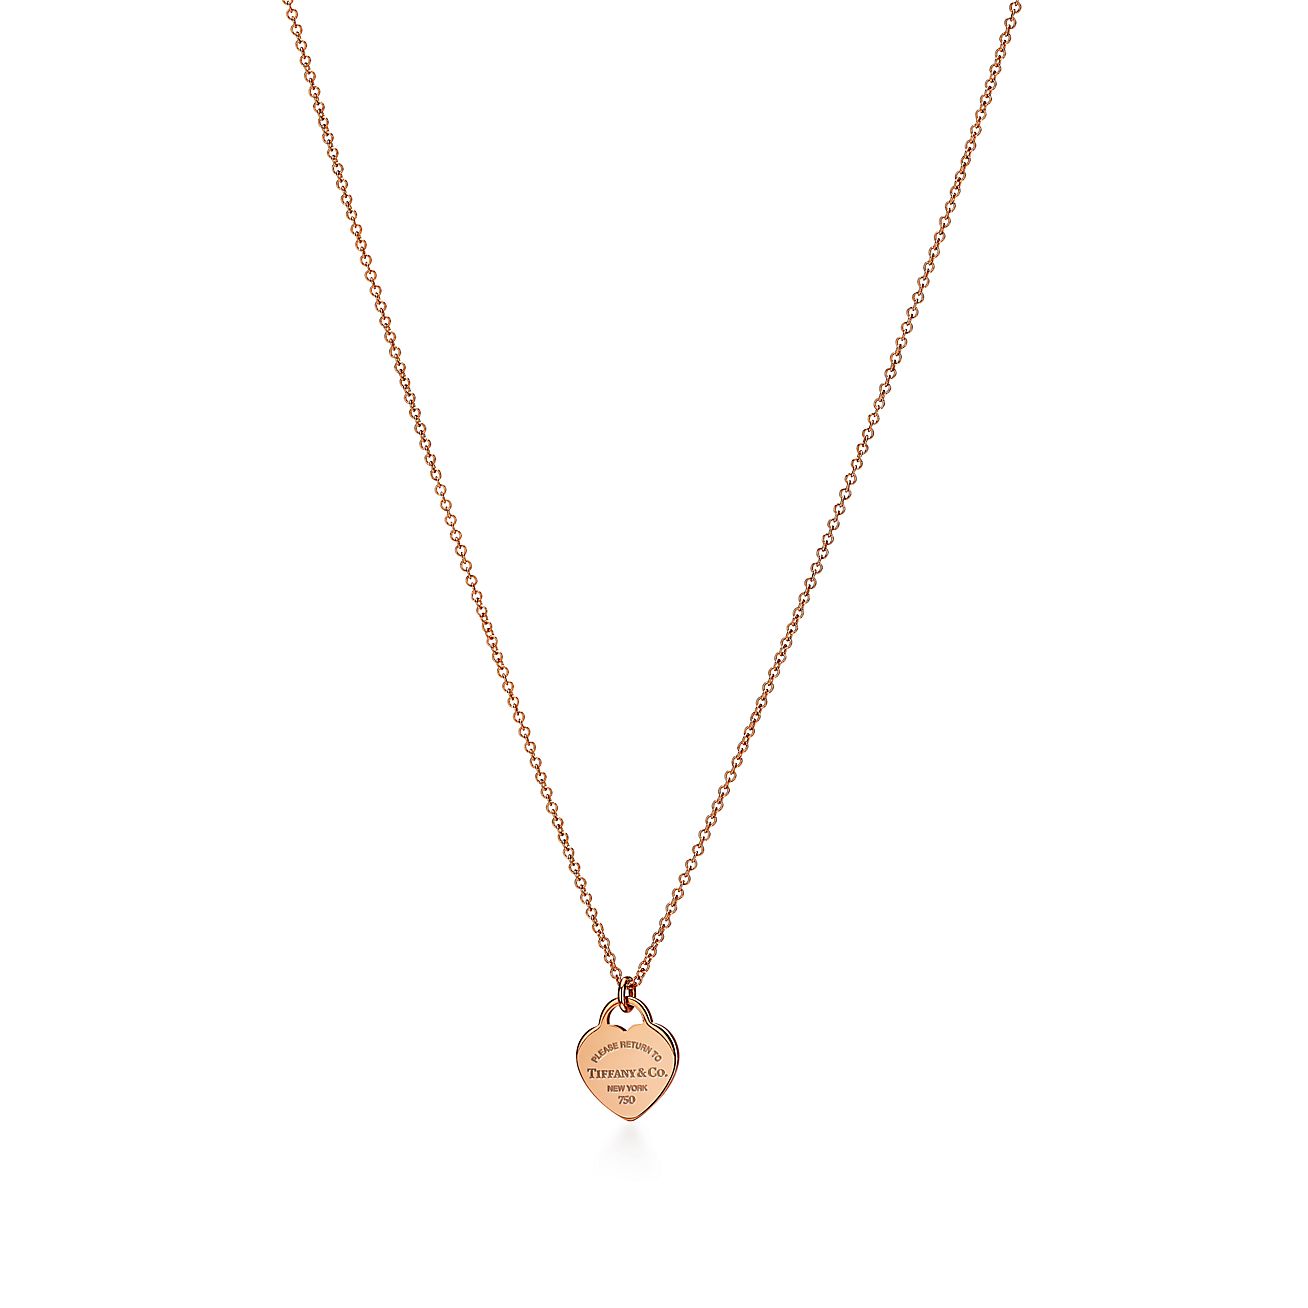 Tiffany & Co. Mini Heart Lock Necklace 18K Yellow Gold 750